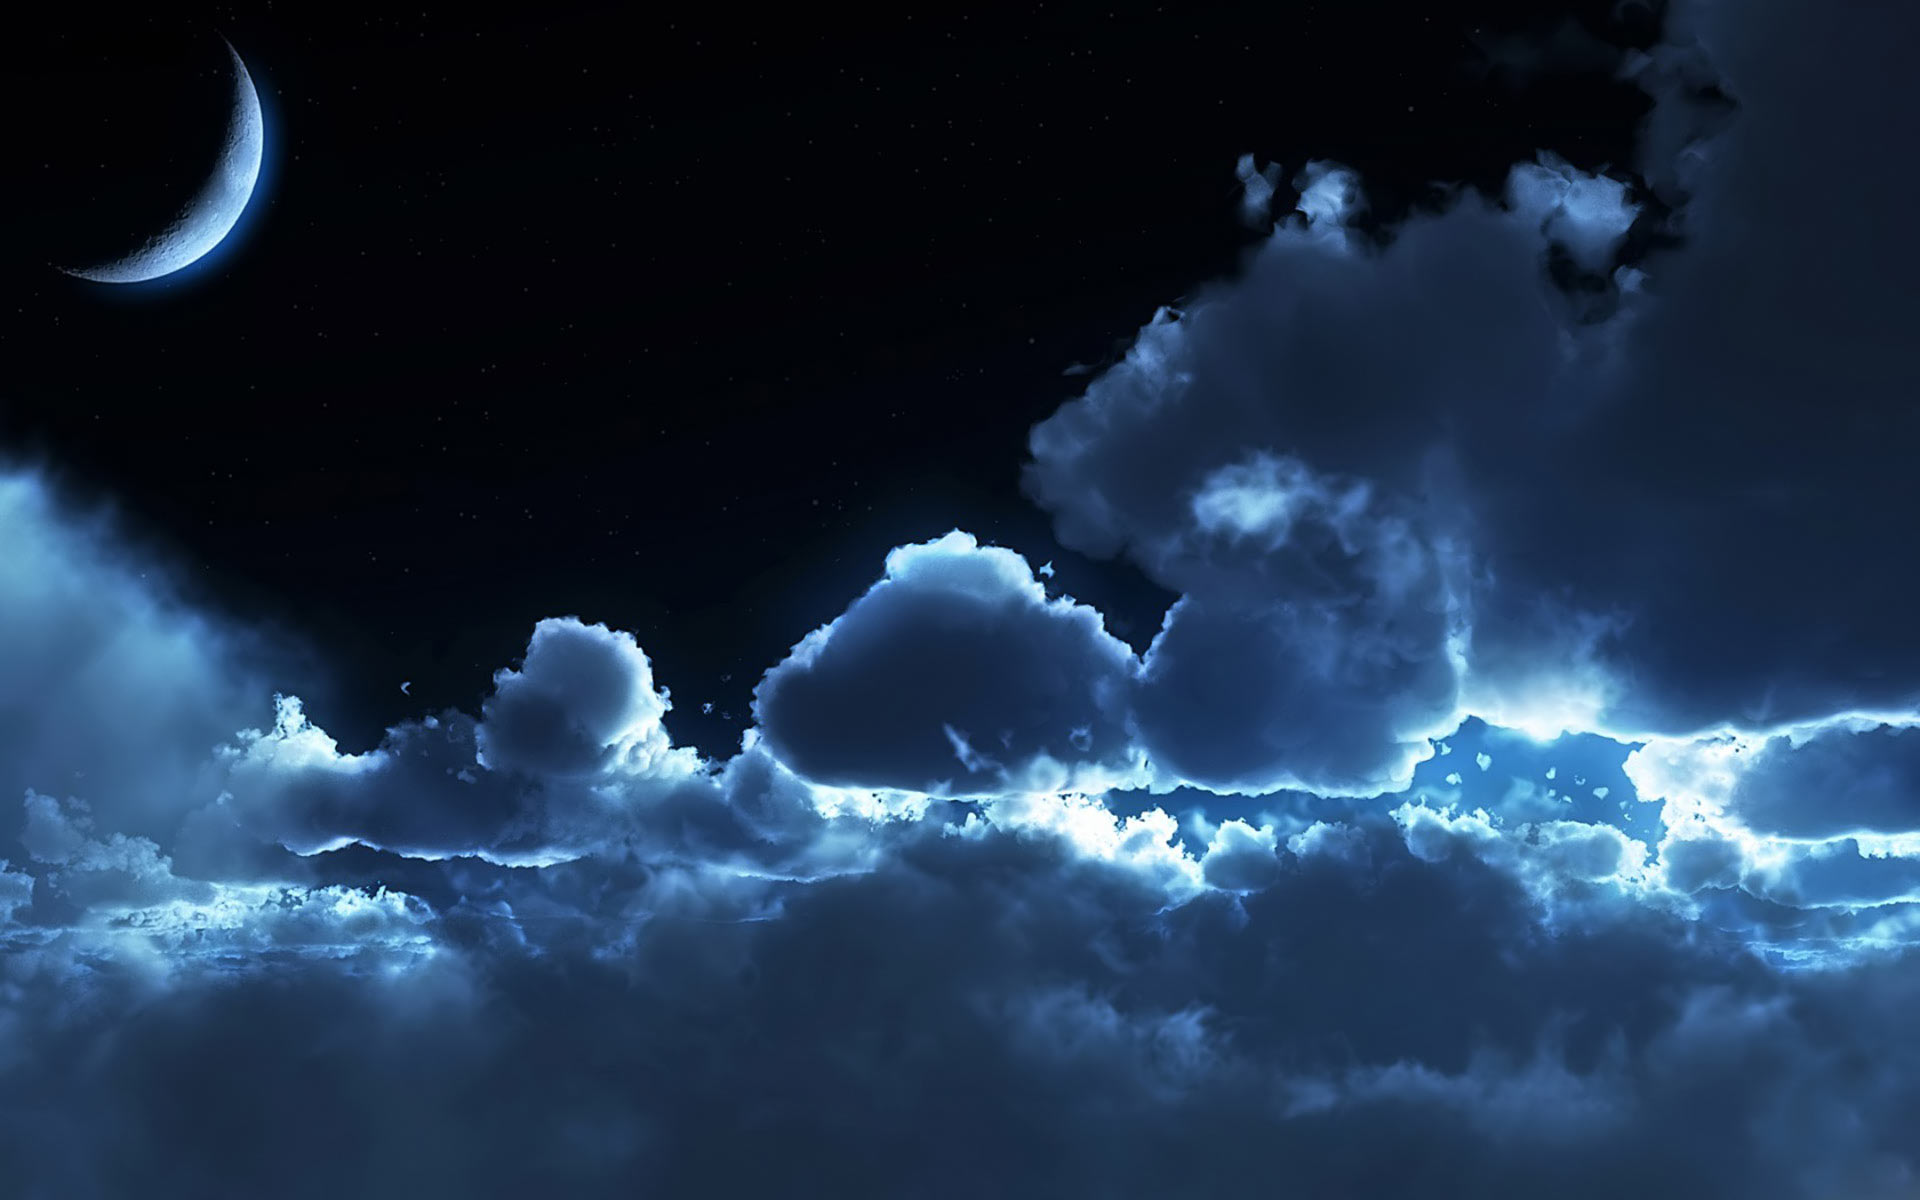 Mời bạn tới xem hình ảnh đẹp về mặt trăng tối mây mù. Điều này sẽ đưa bạn vào một thế giới của những yếu tố tự nhiên và sự độc đáo của ánh sáng trăng.